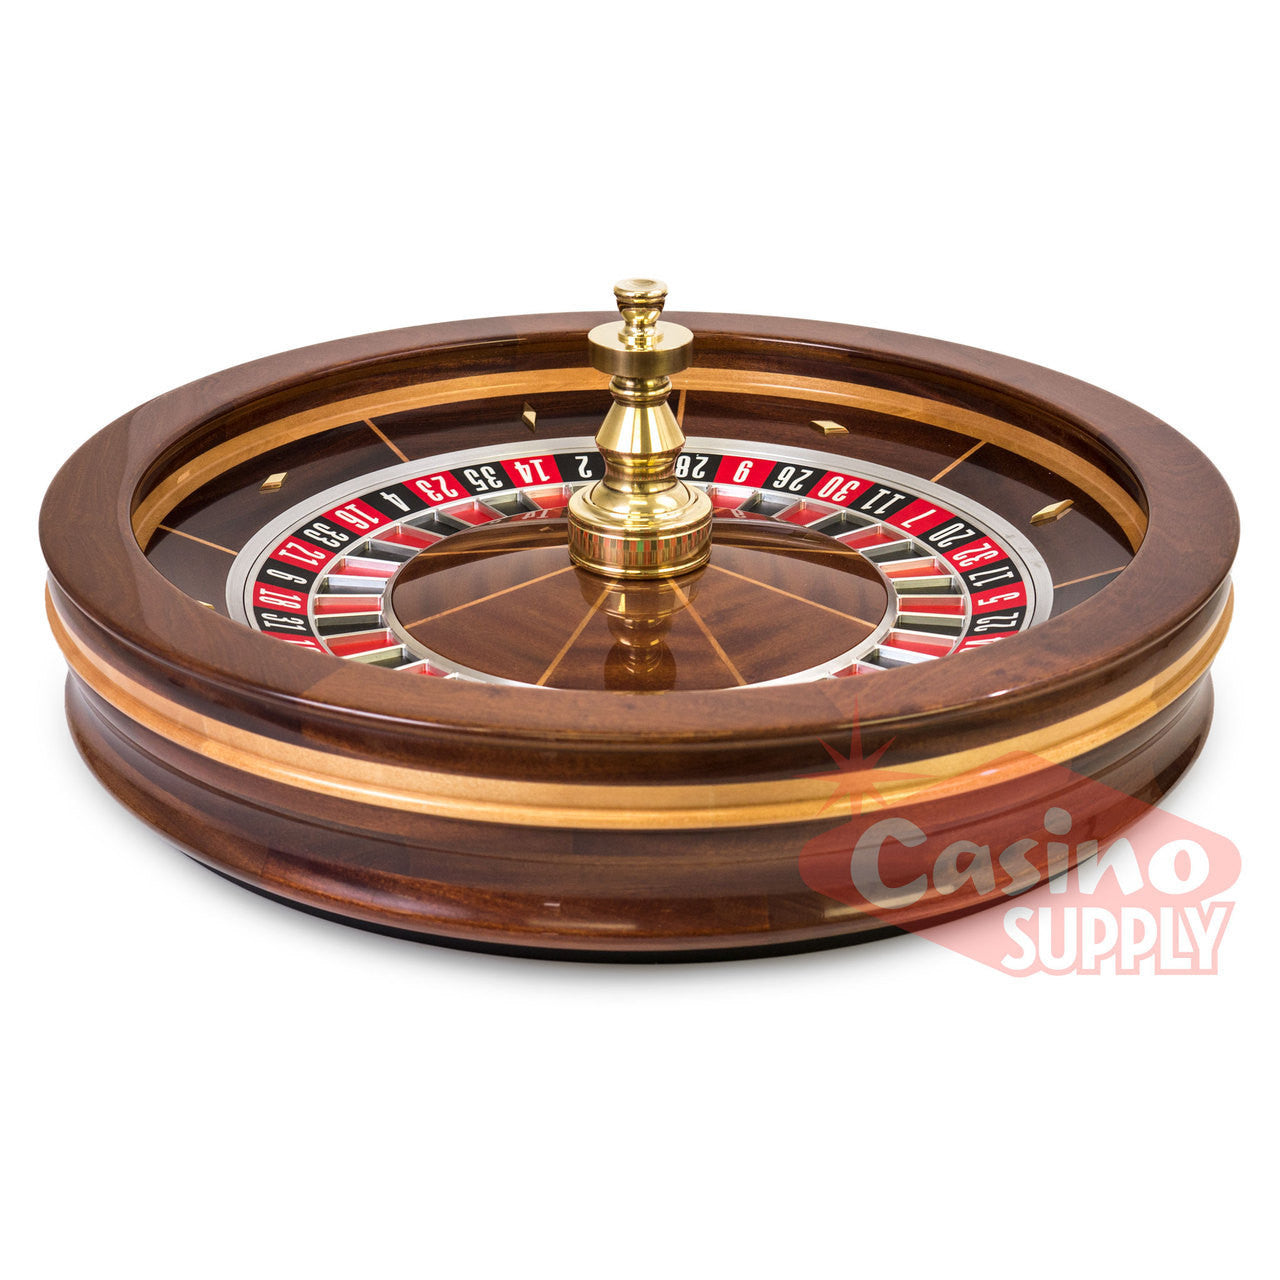 Roulette Wheel 32 Inch Professional Grade - Casino Supply - 1